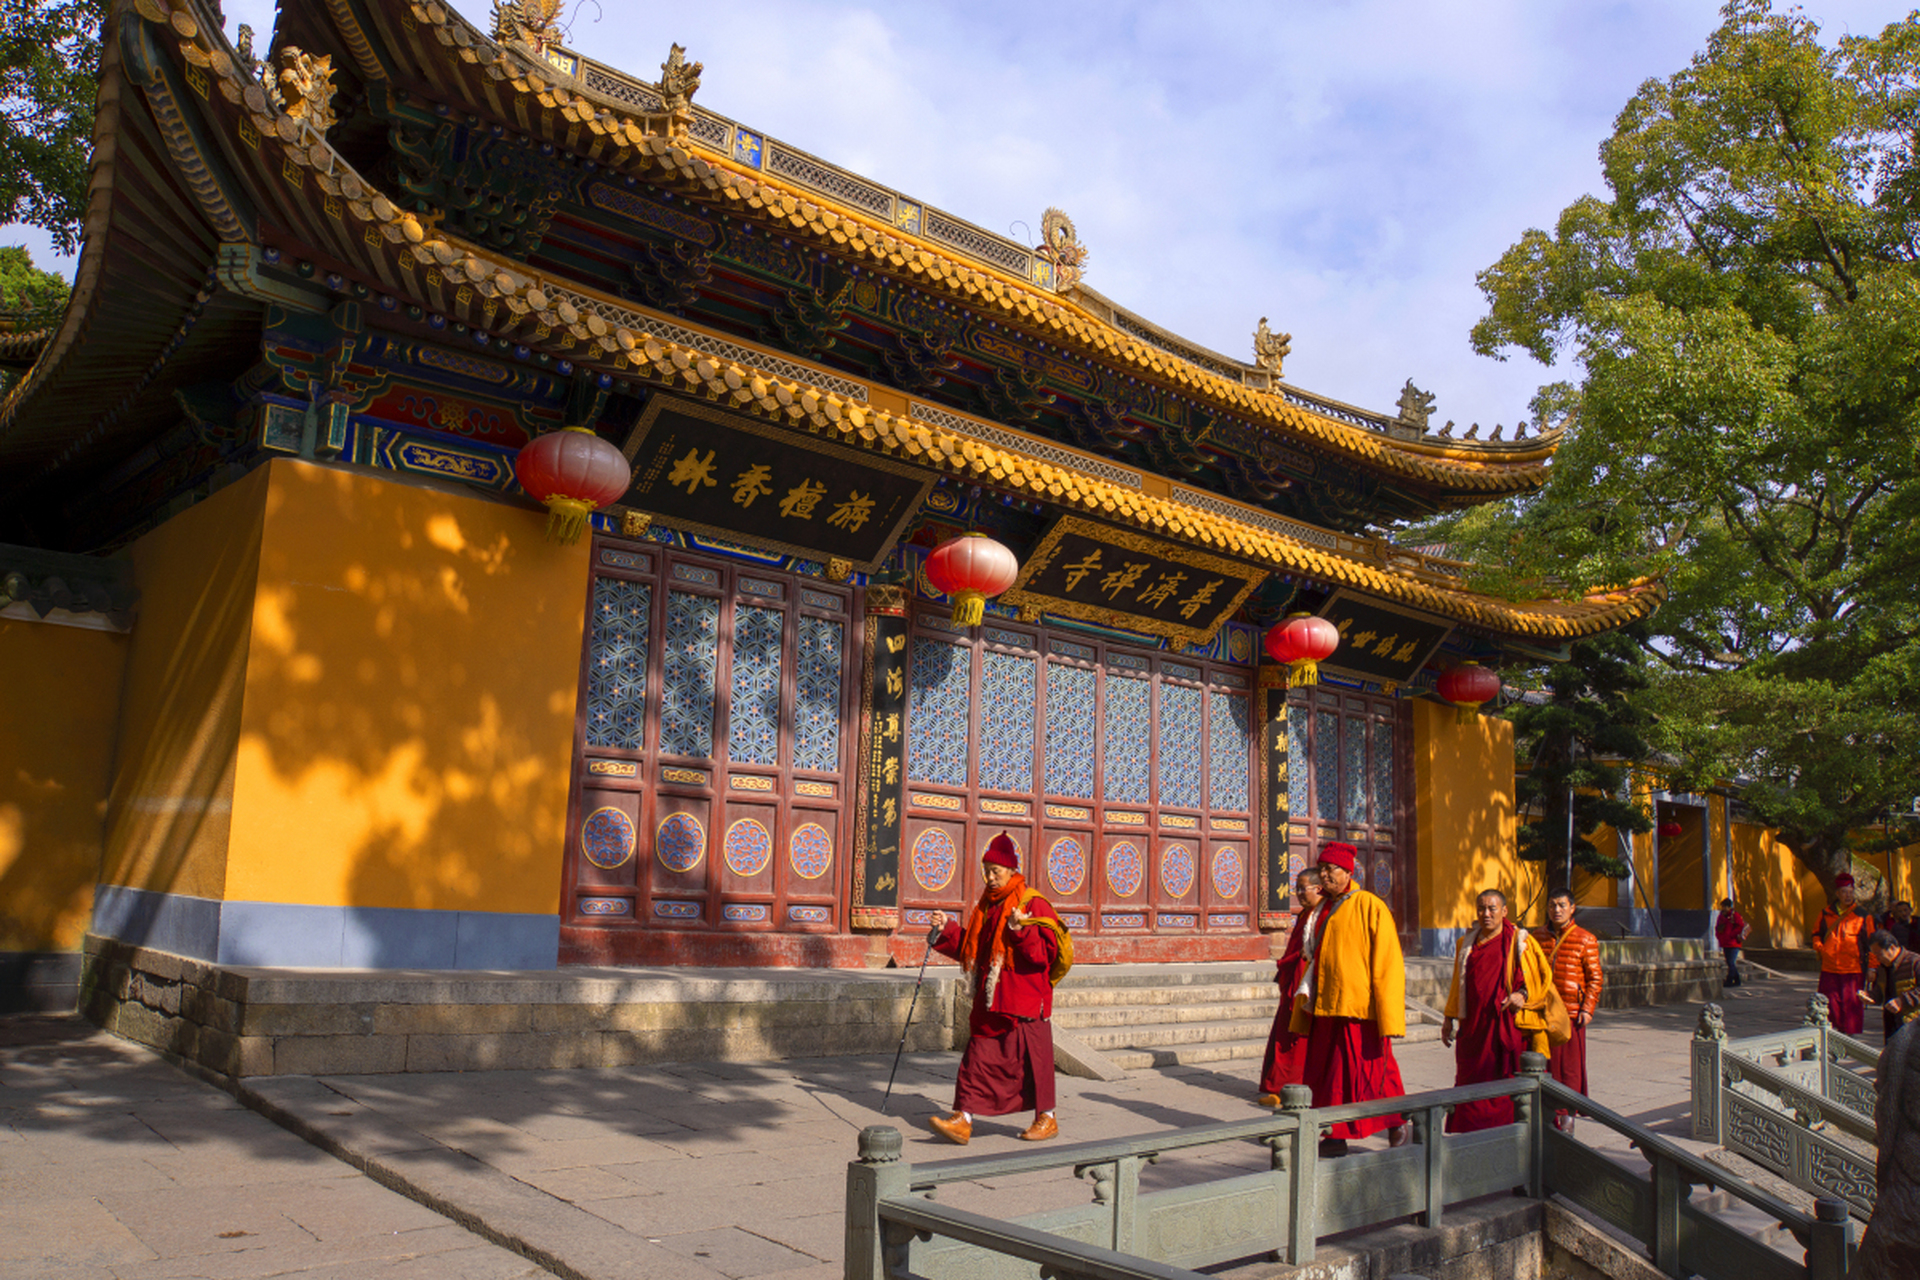 探访甘肃张掖大佛寺,领略世界最高室外弥勒佛雕塑的雄伟壮观!